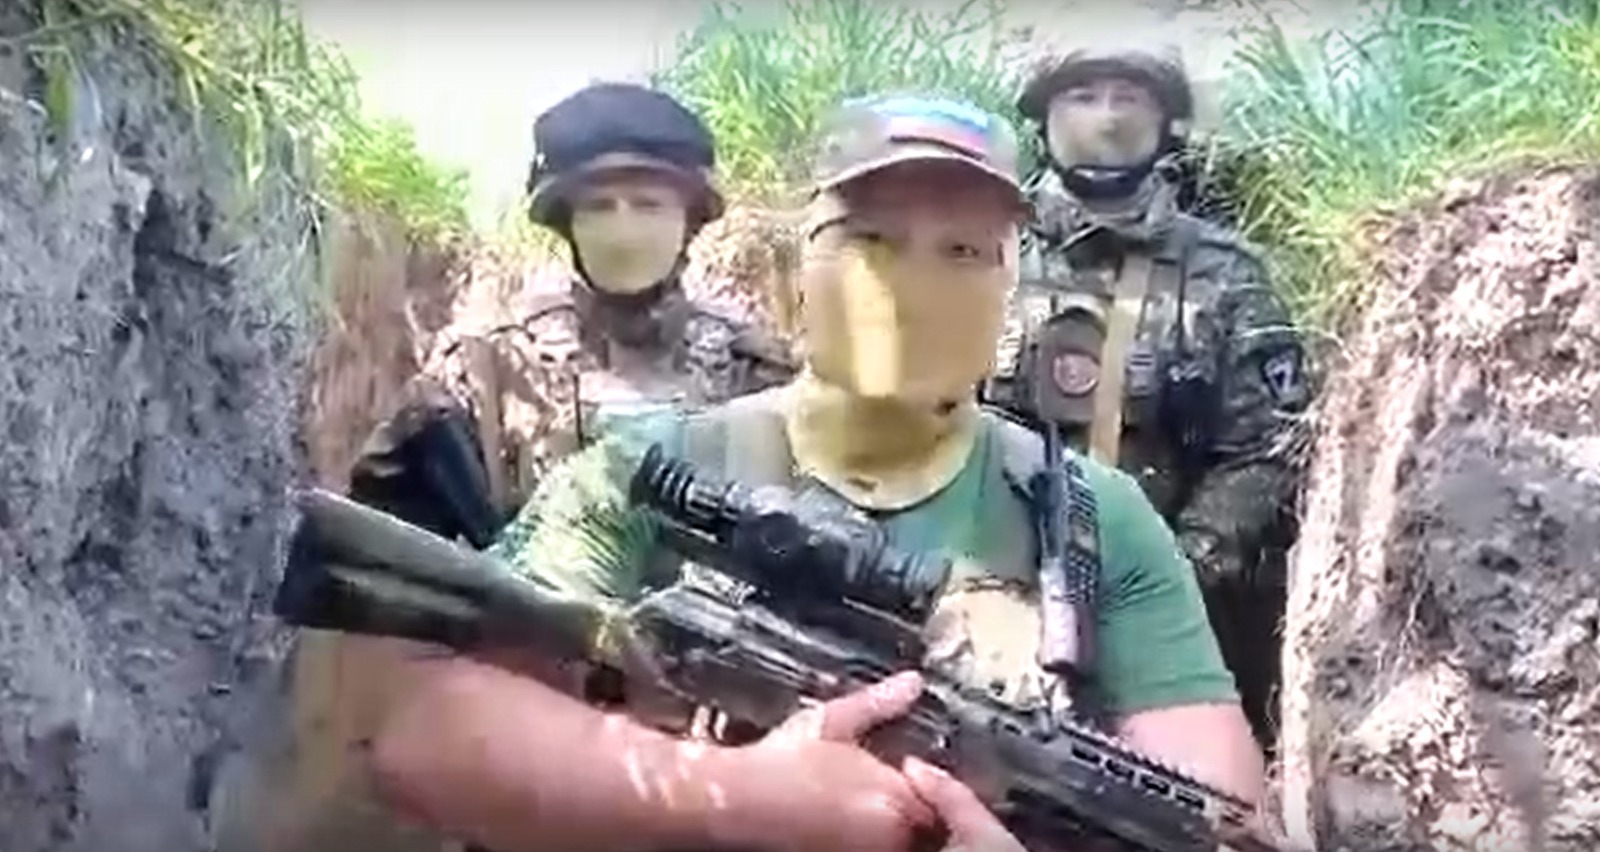 Бойцы из Башкирии поздравили детей, отправив видео с зоны СВО